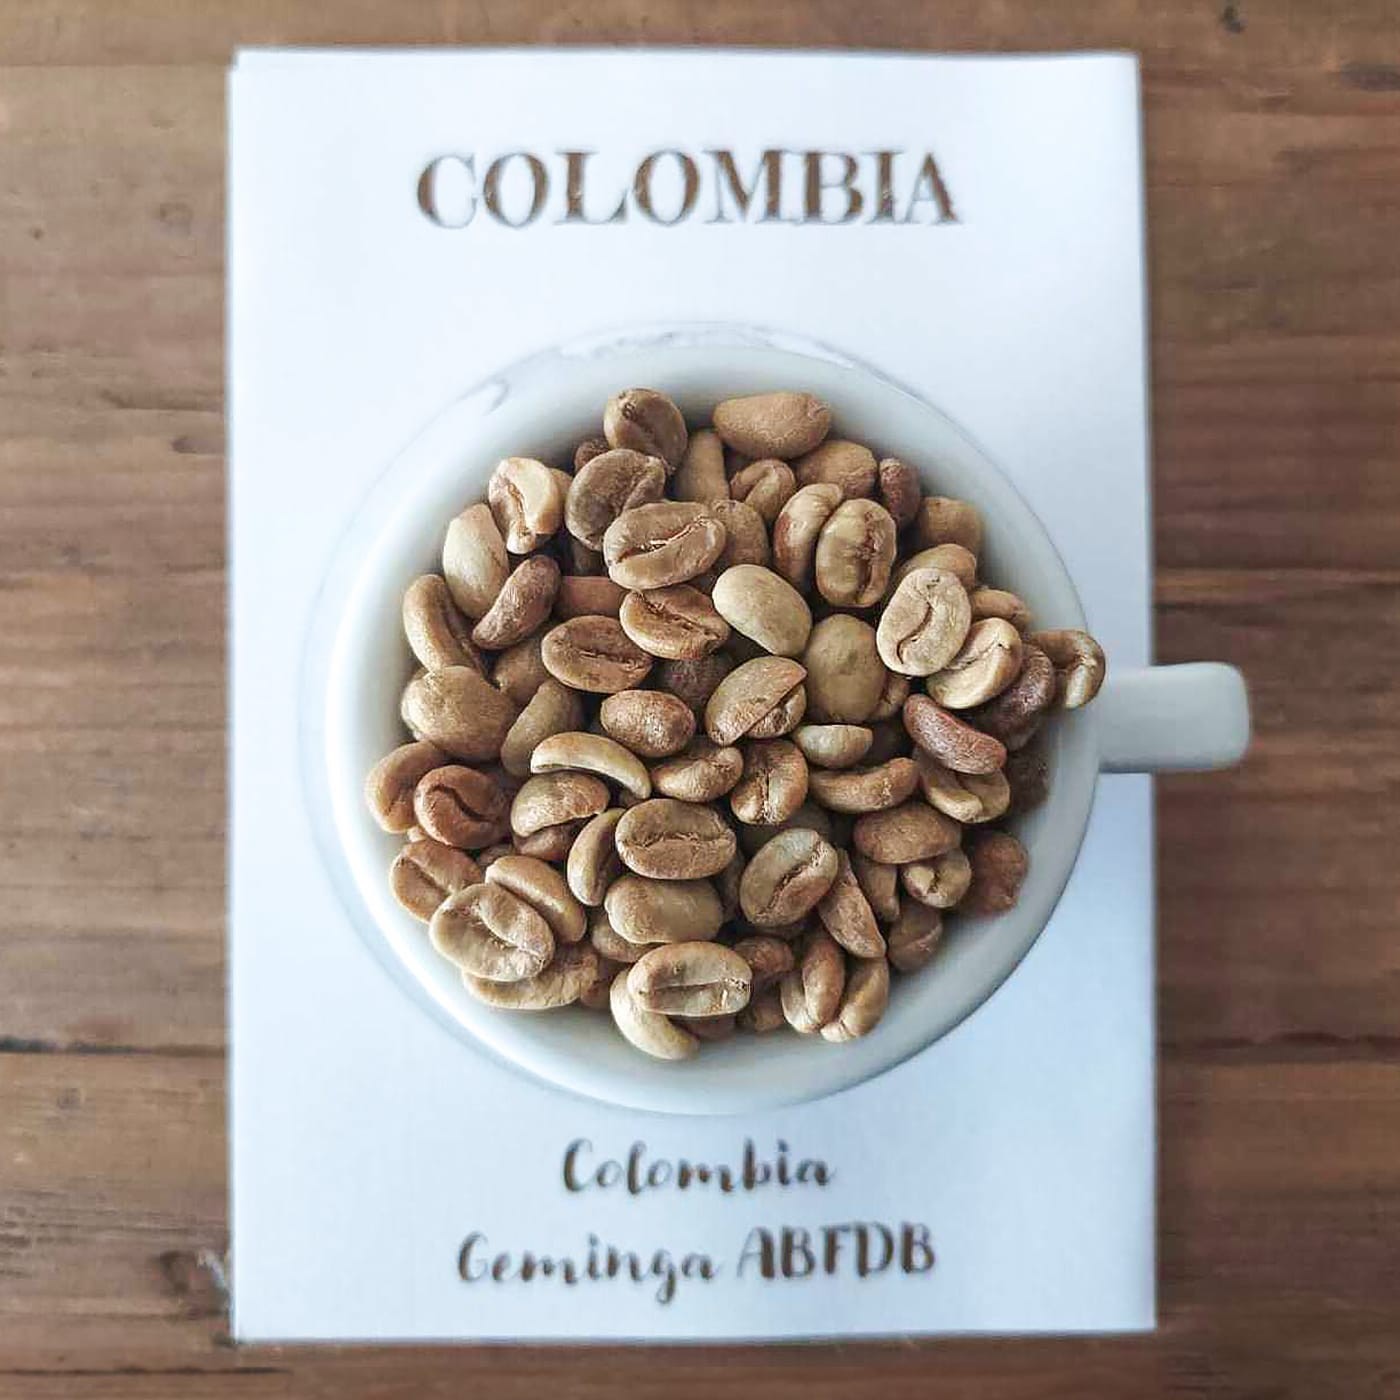 Colombia Geminga Caffè Fusari